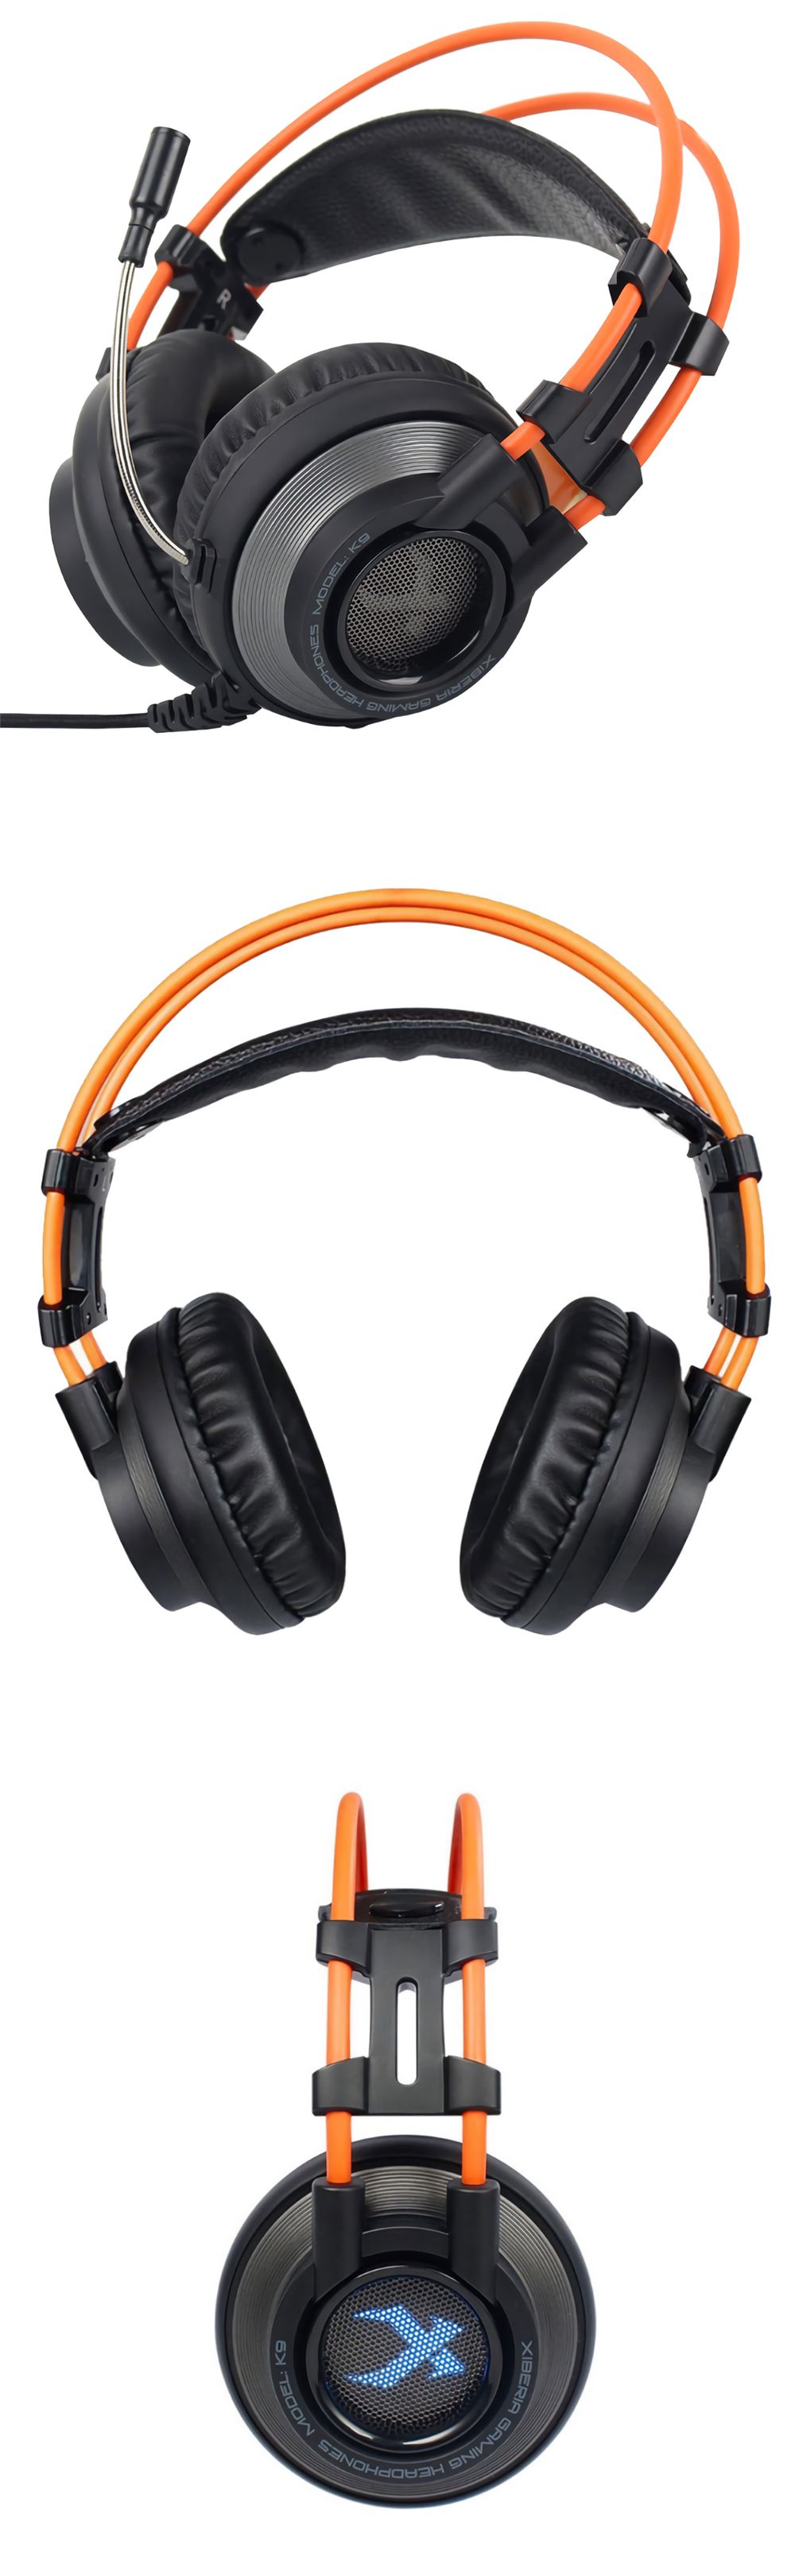 XIBERIA-K9U-Game-Headset-USB-Wired-71-Channel-RGB-Gaming-Headphone-Stereo-Earphone-Headphones-with-M-1707323